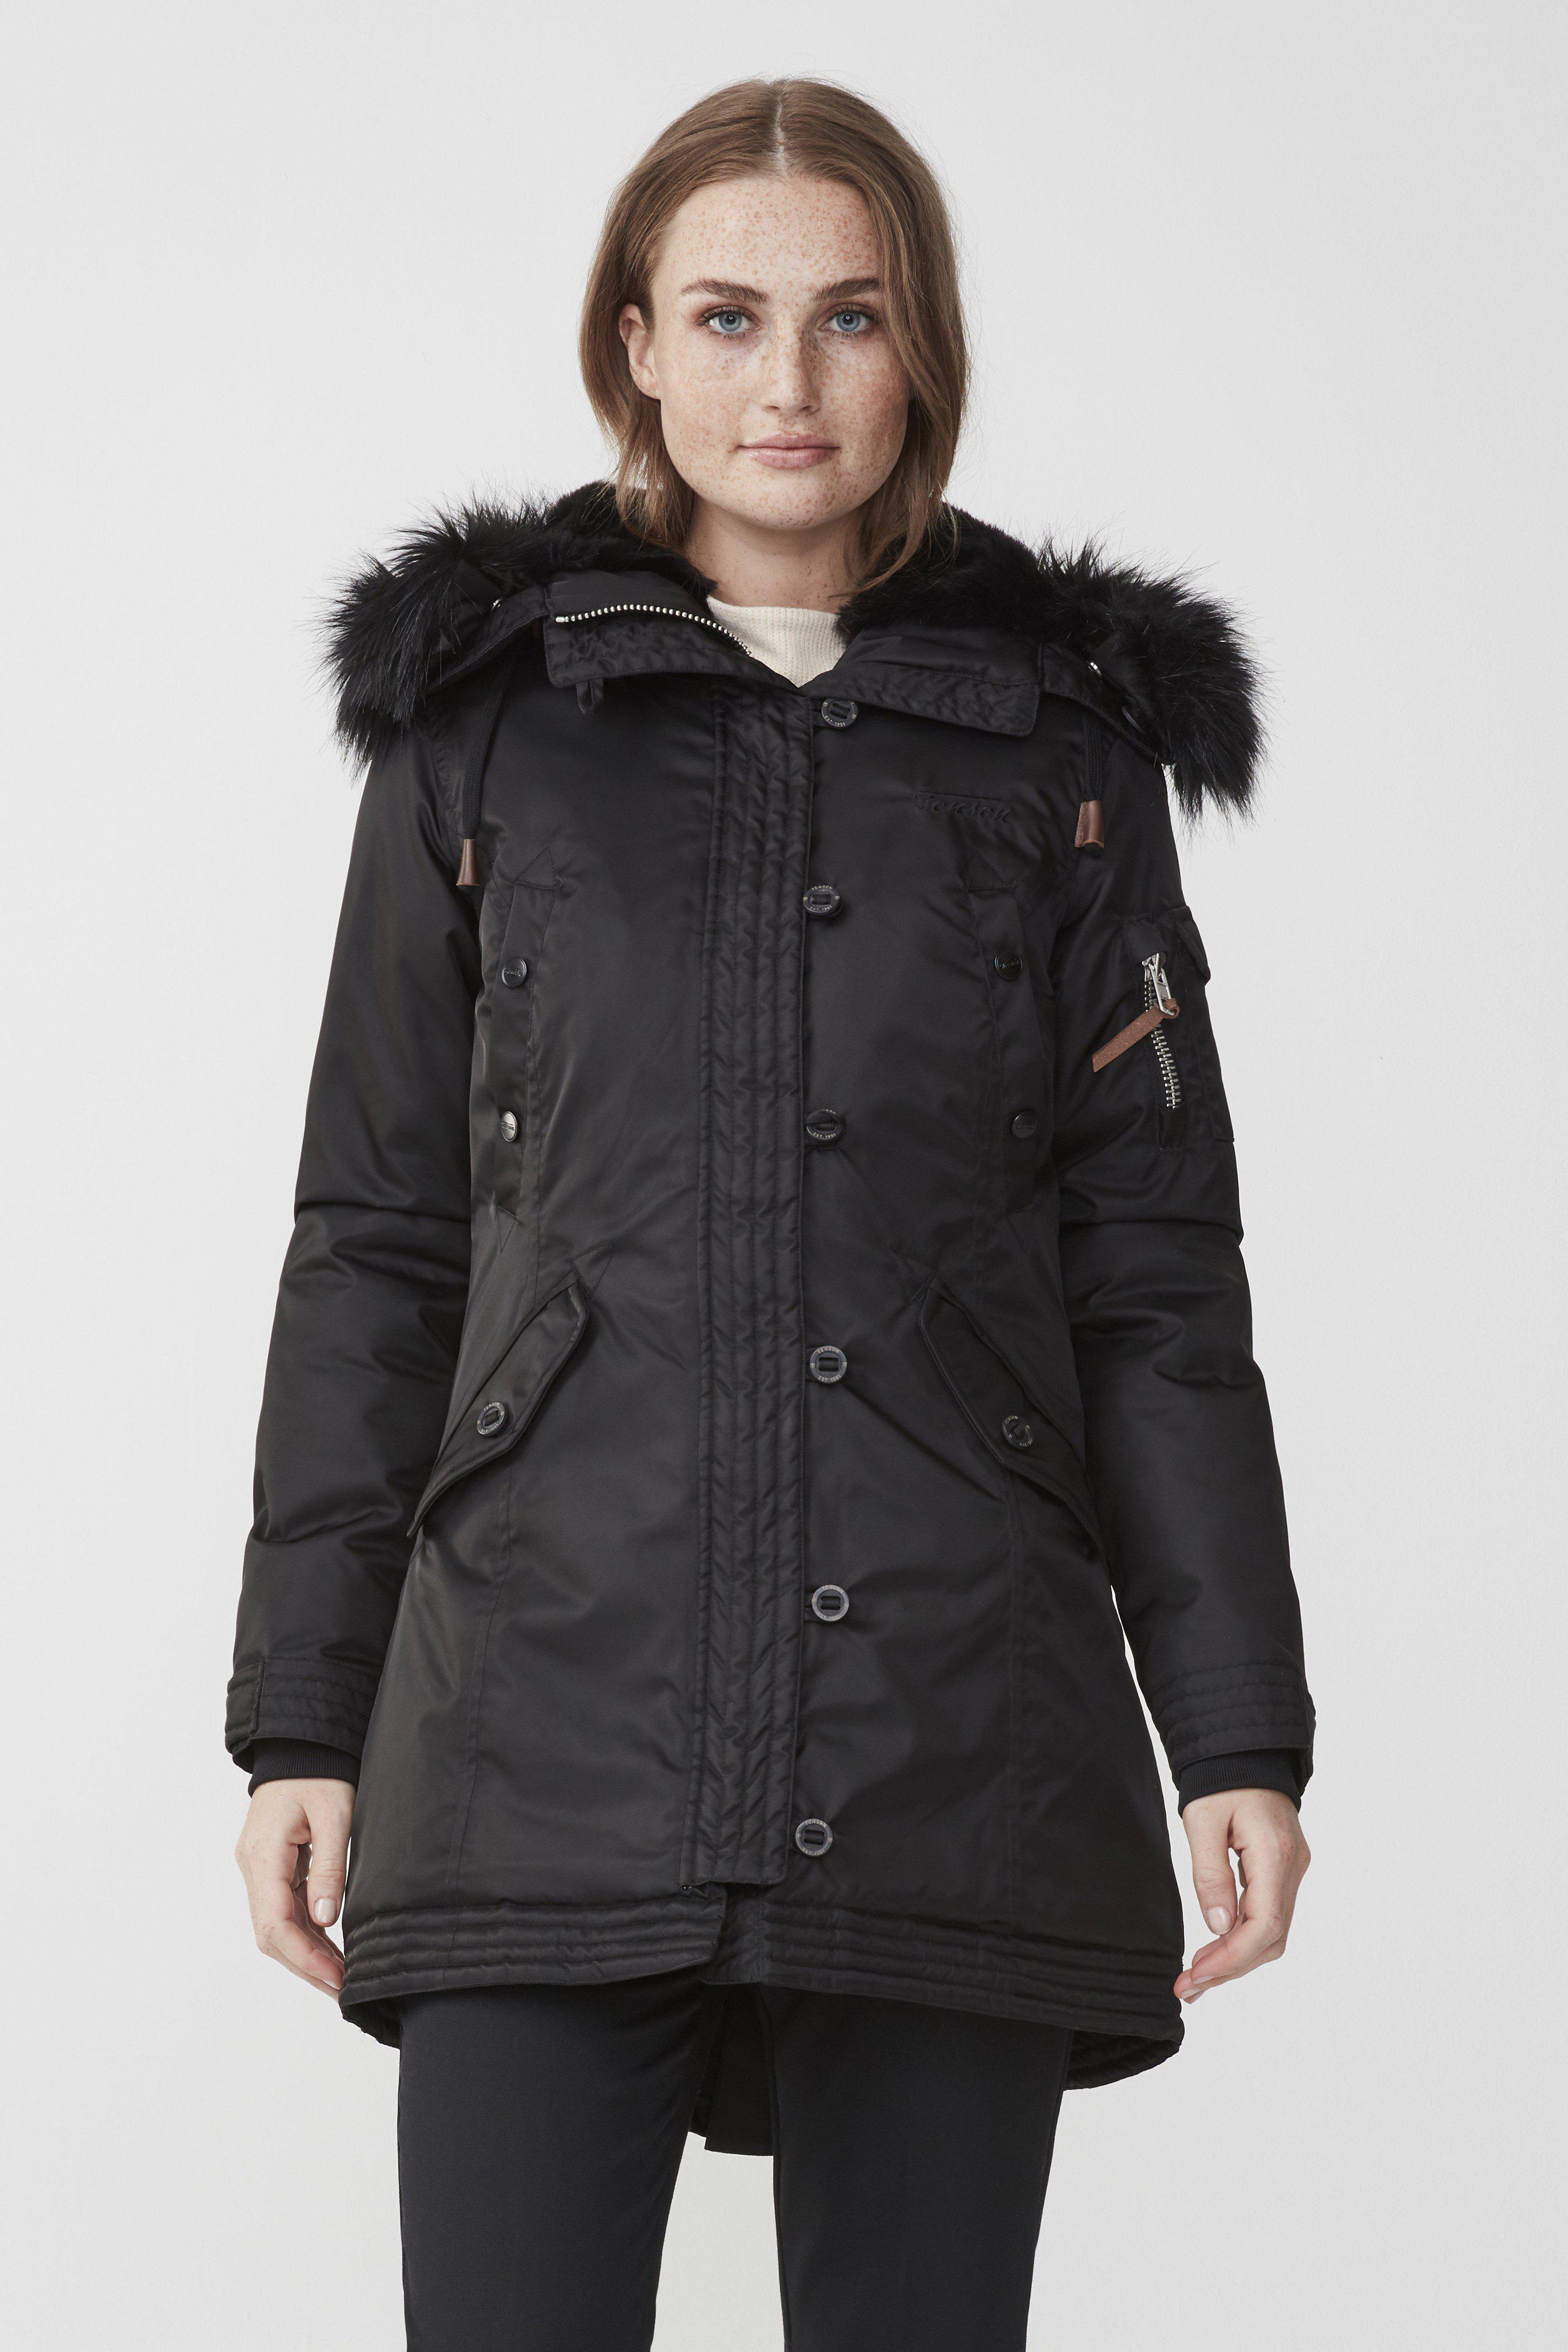 Buy Black Jackets  Coats for Men by SUPERDRY Online  Ajiocom